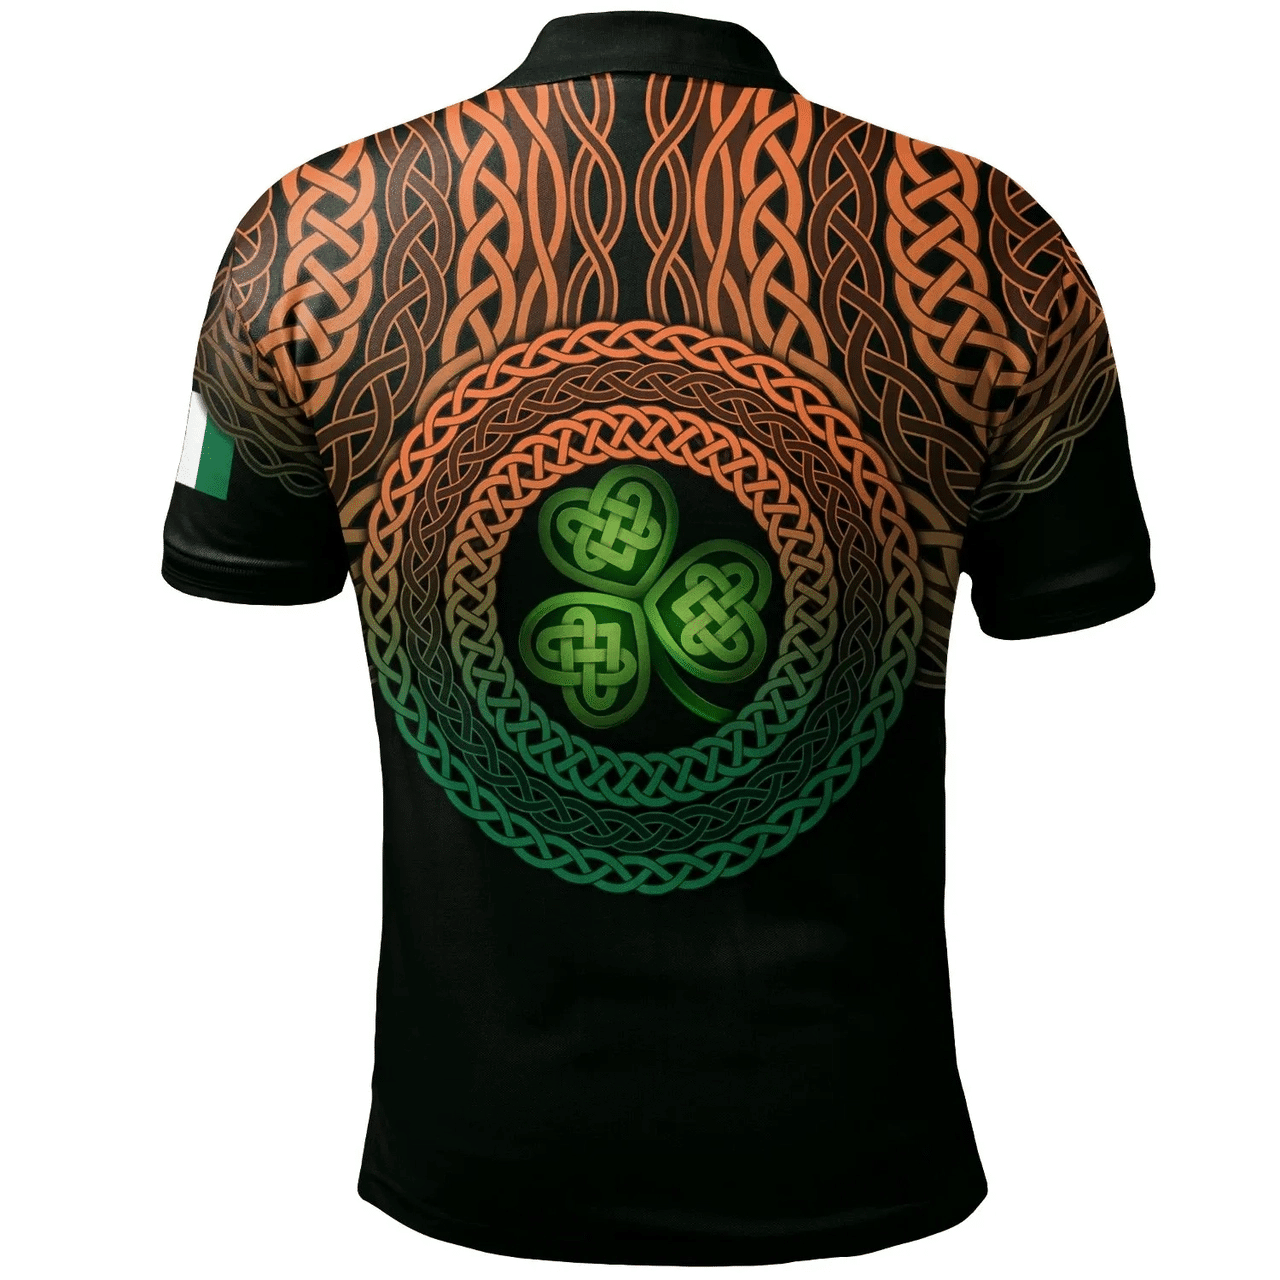 1stIreland Ireland Polo Shirt - Horan or O'Horan Irish Family Crest Polo Shirt - Celtic Pride A7 | 1stIreland.com